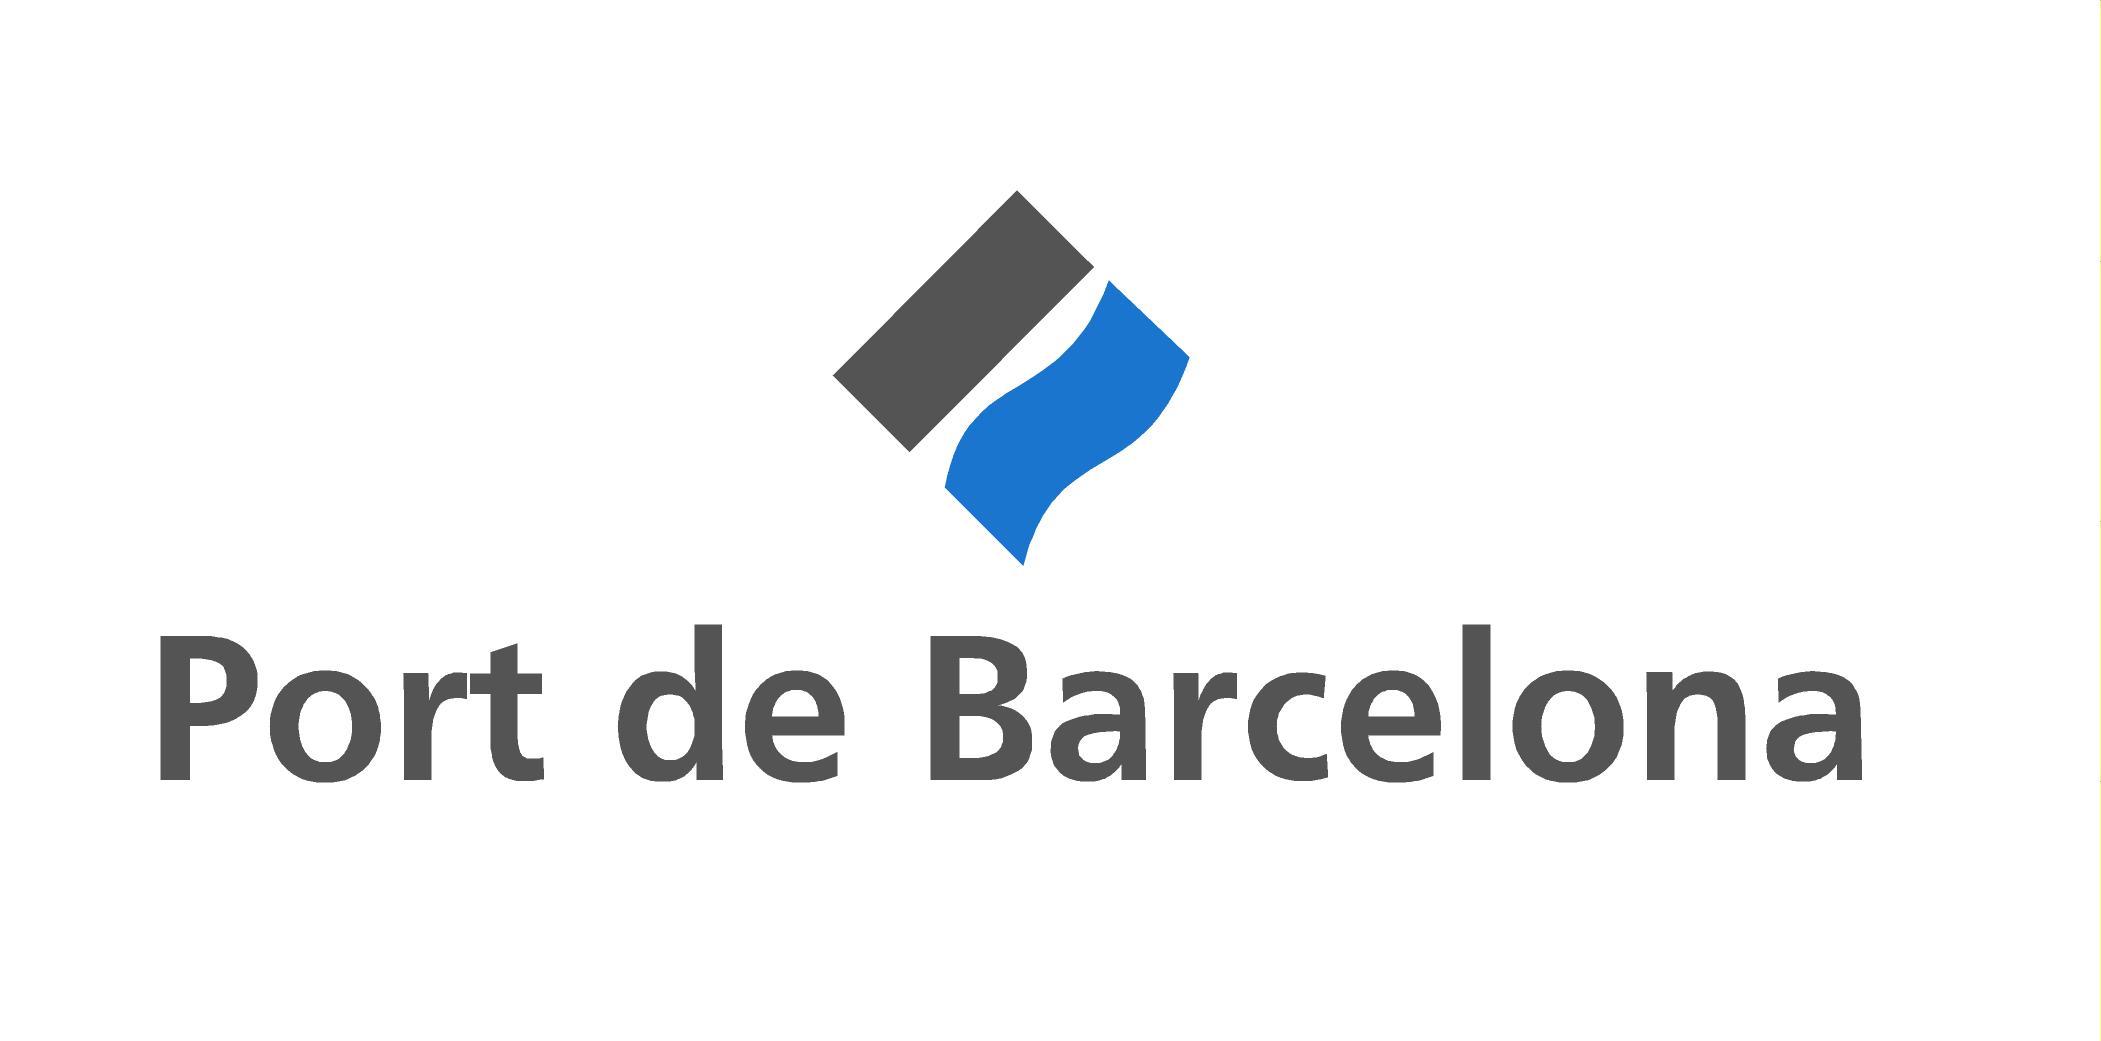 Logo Port de Barcelona